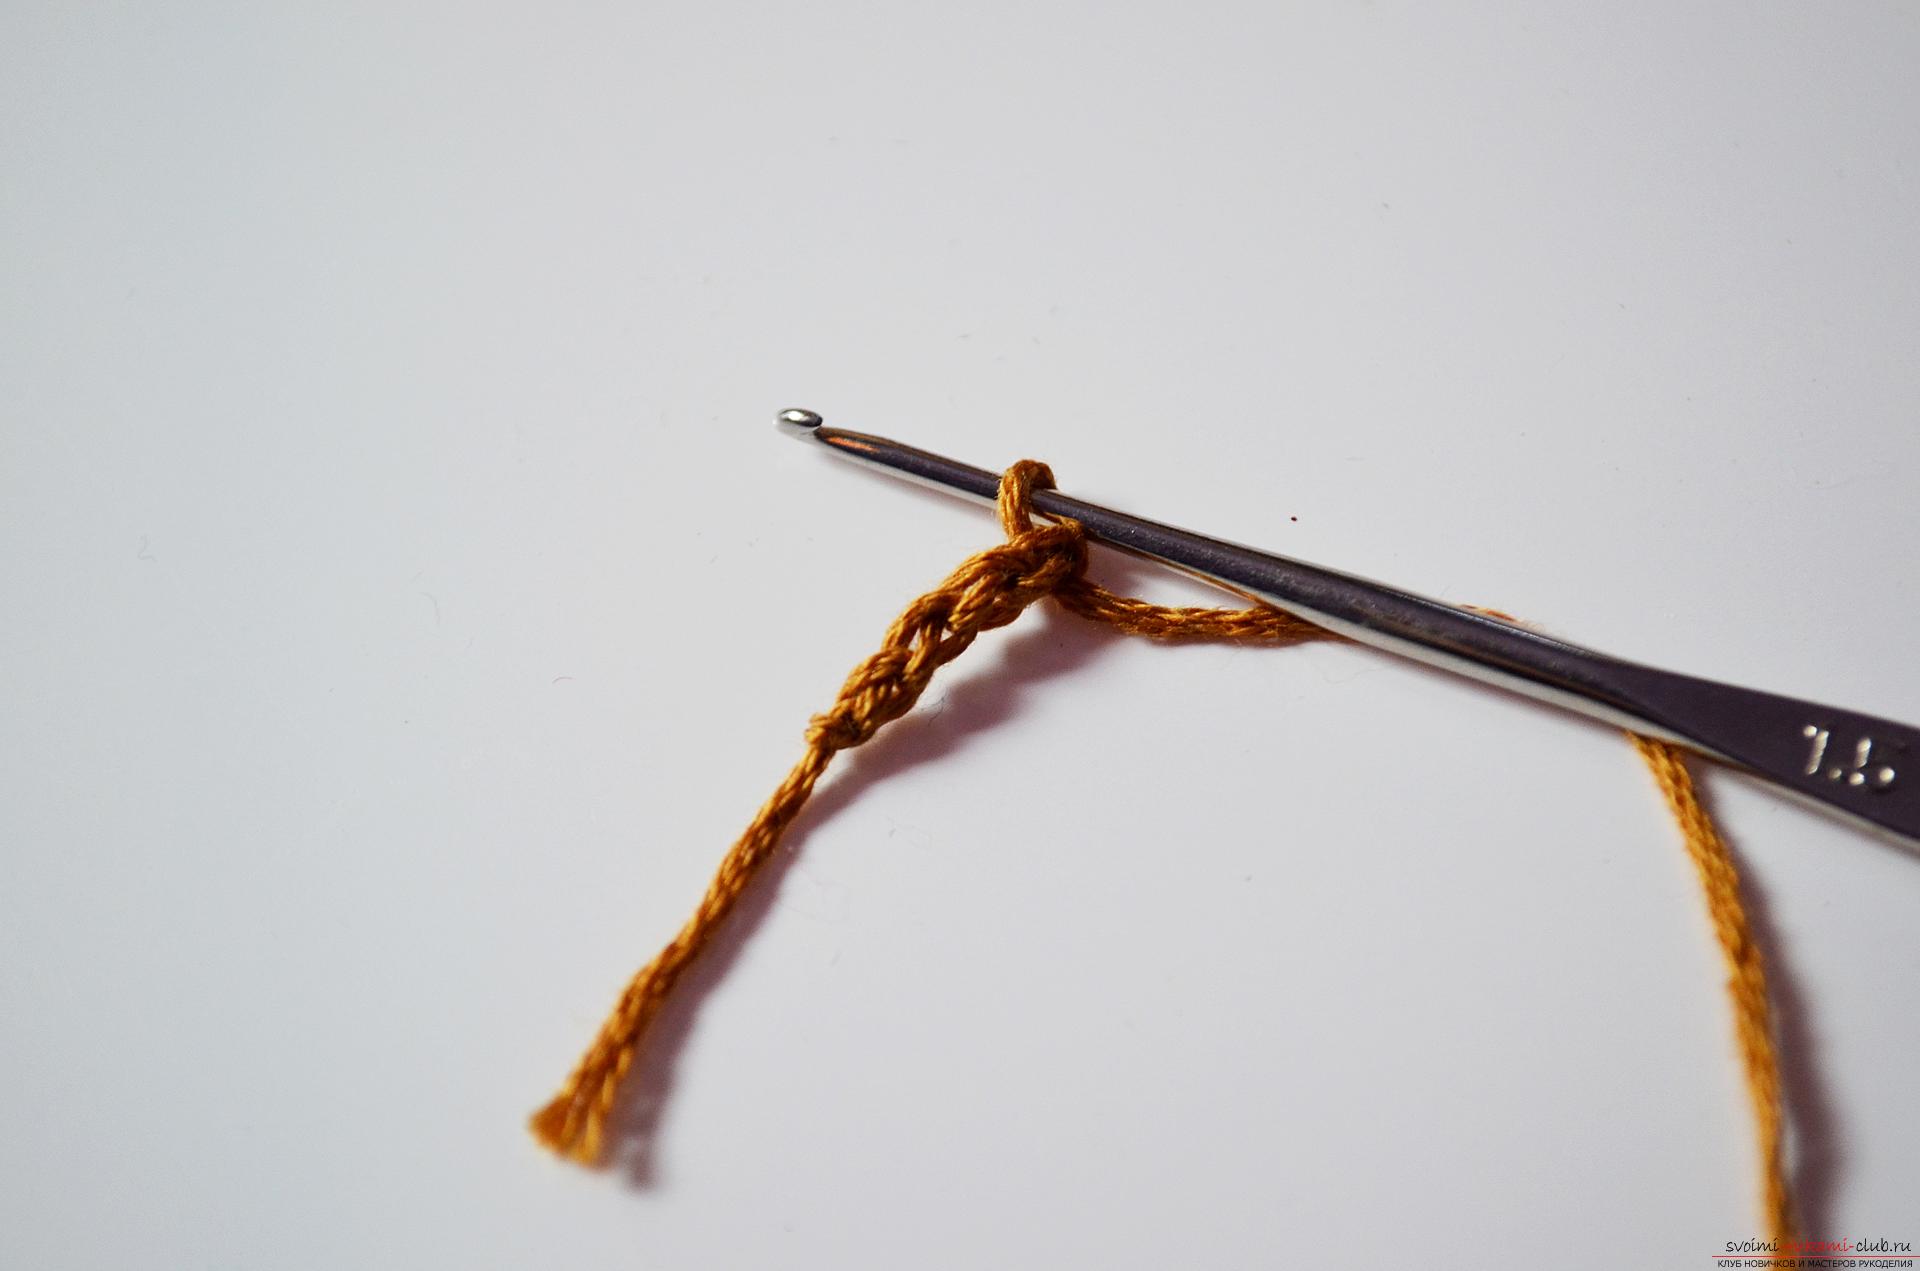 Фото к уроку вязания крючком заколки для волос 